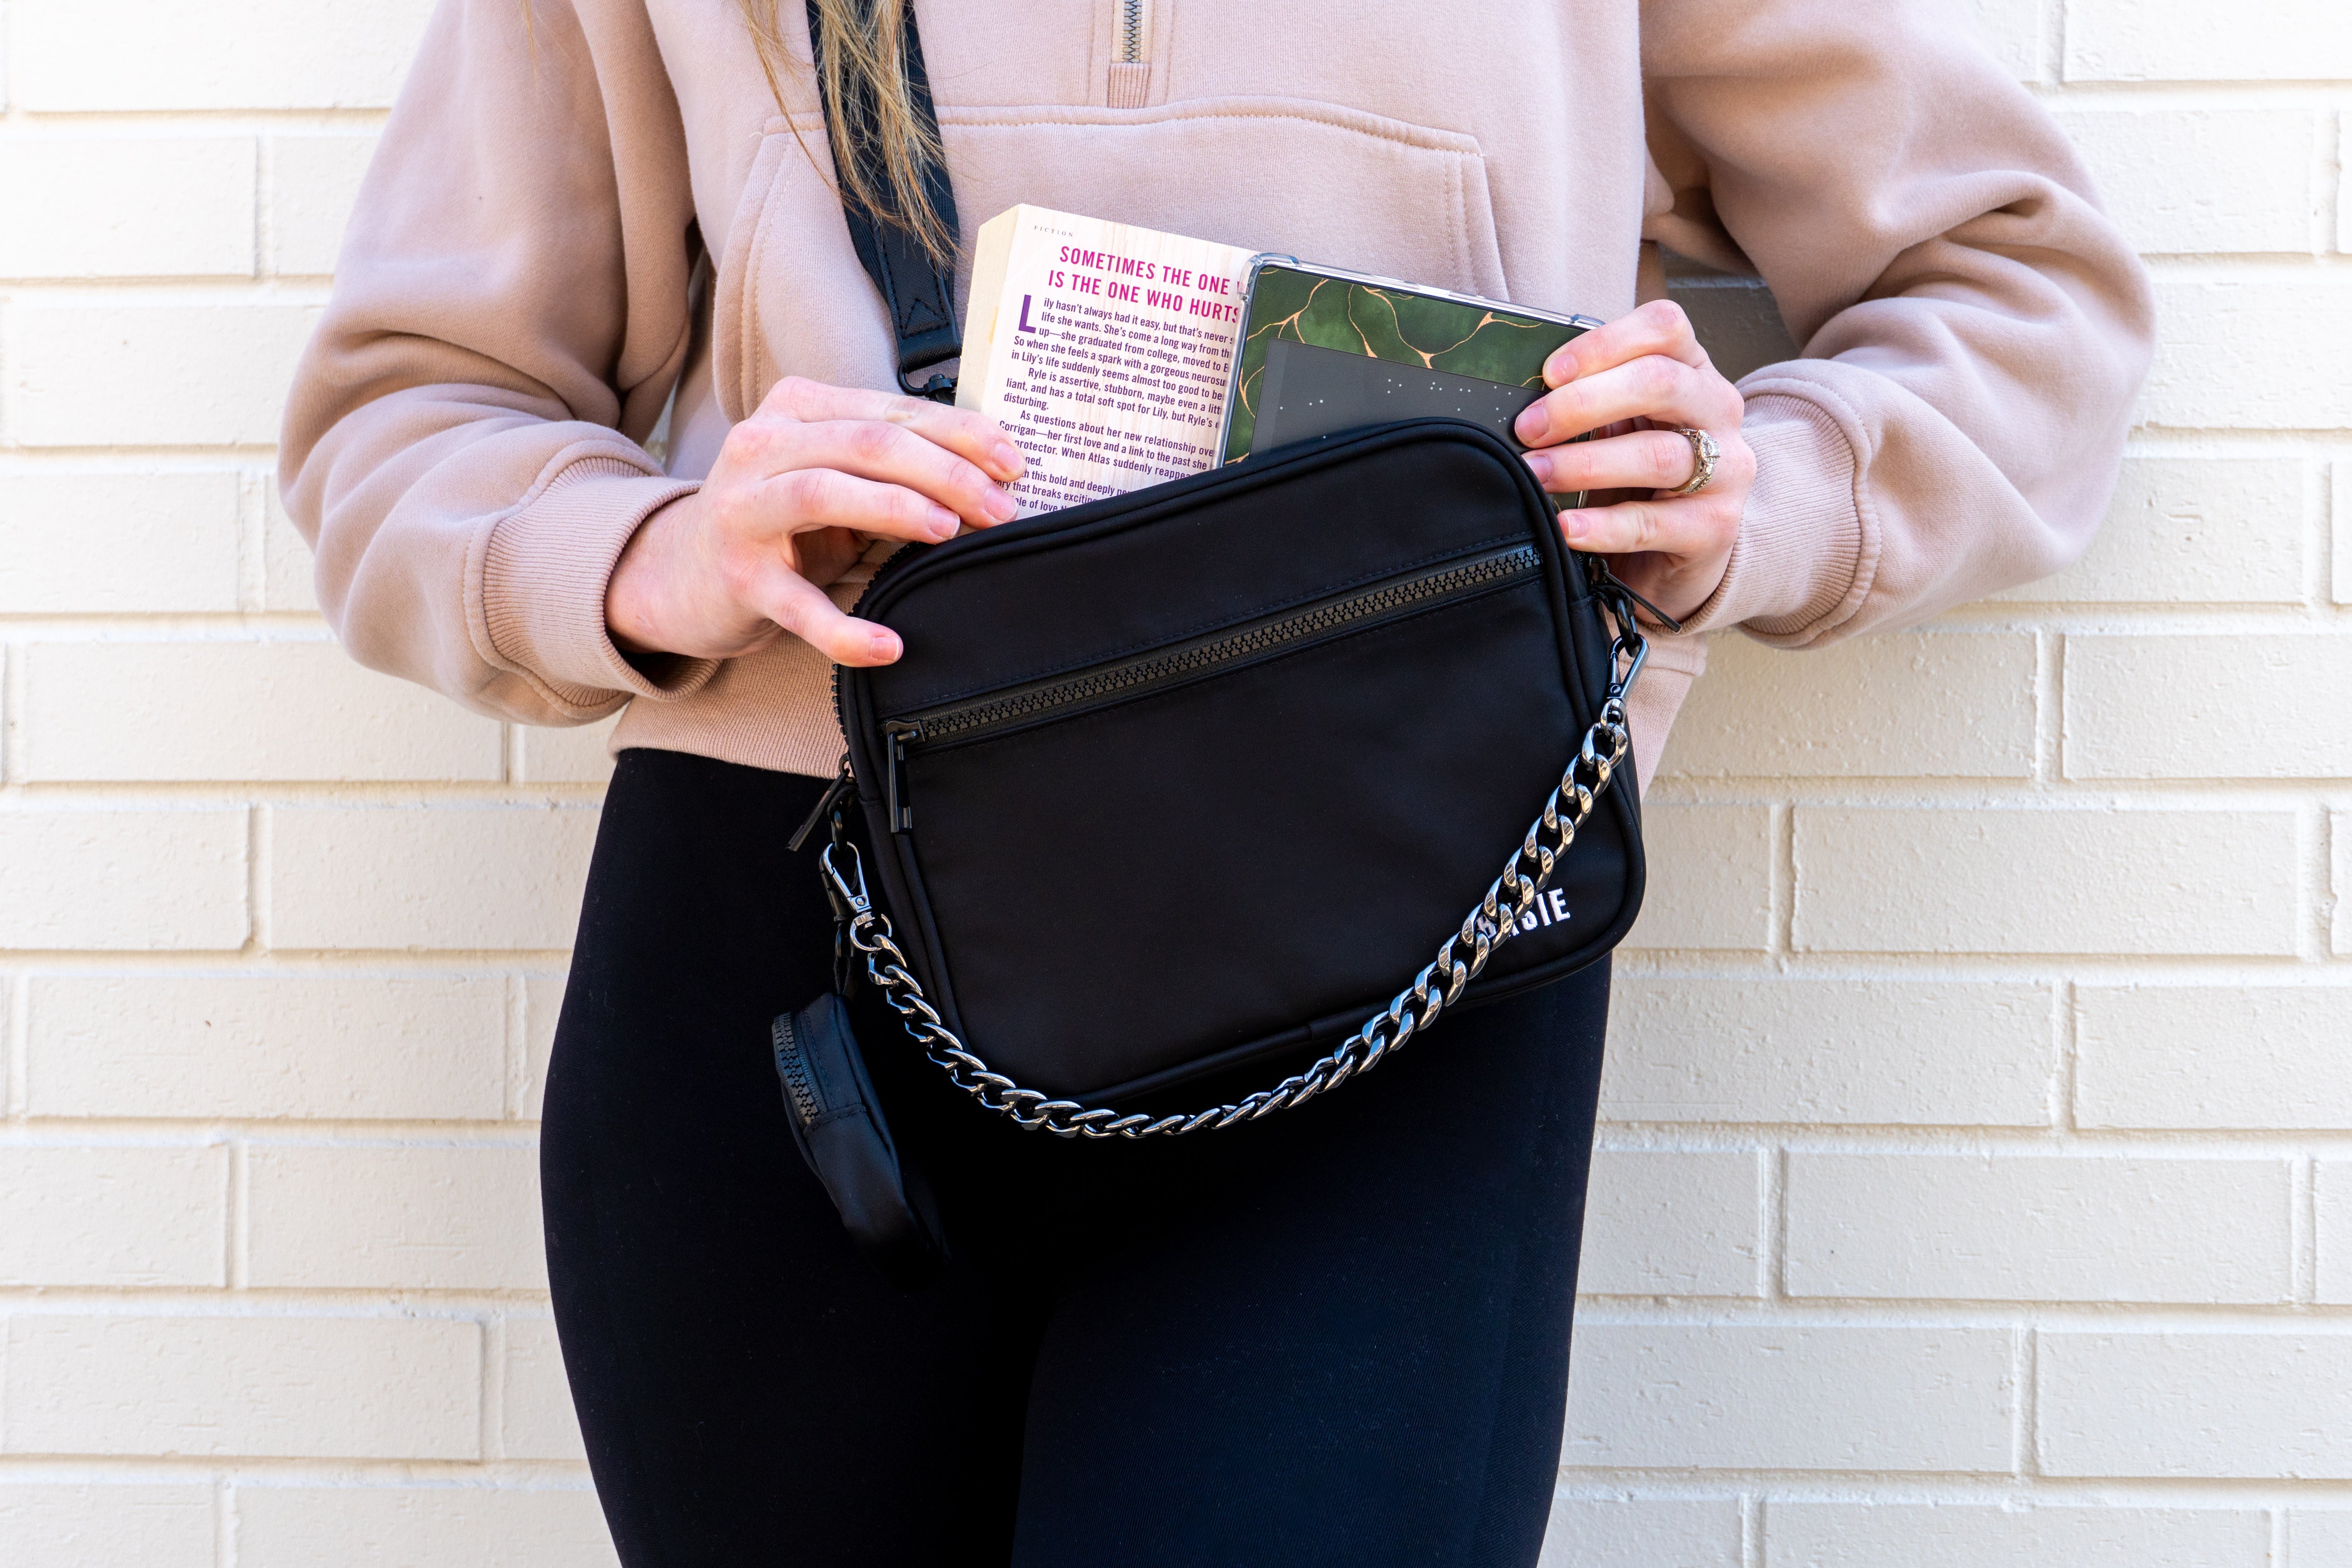 BXSIE brand book Kindle bag purse, front view, black